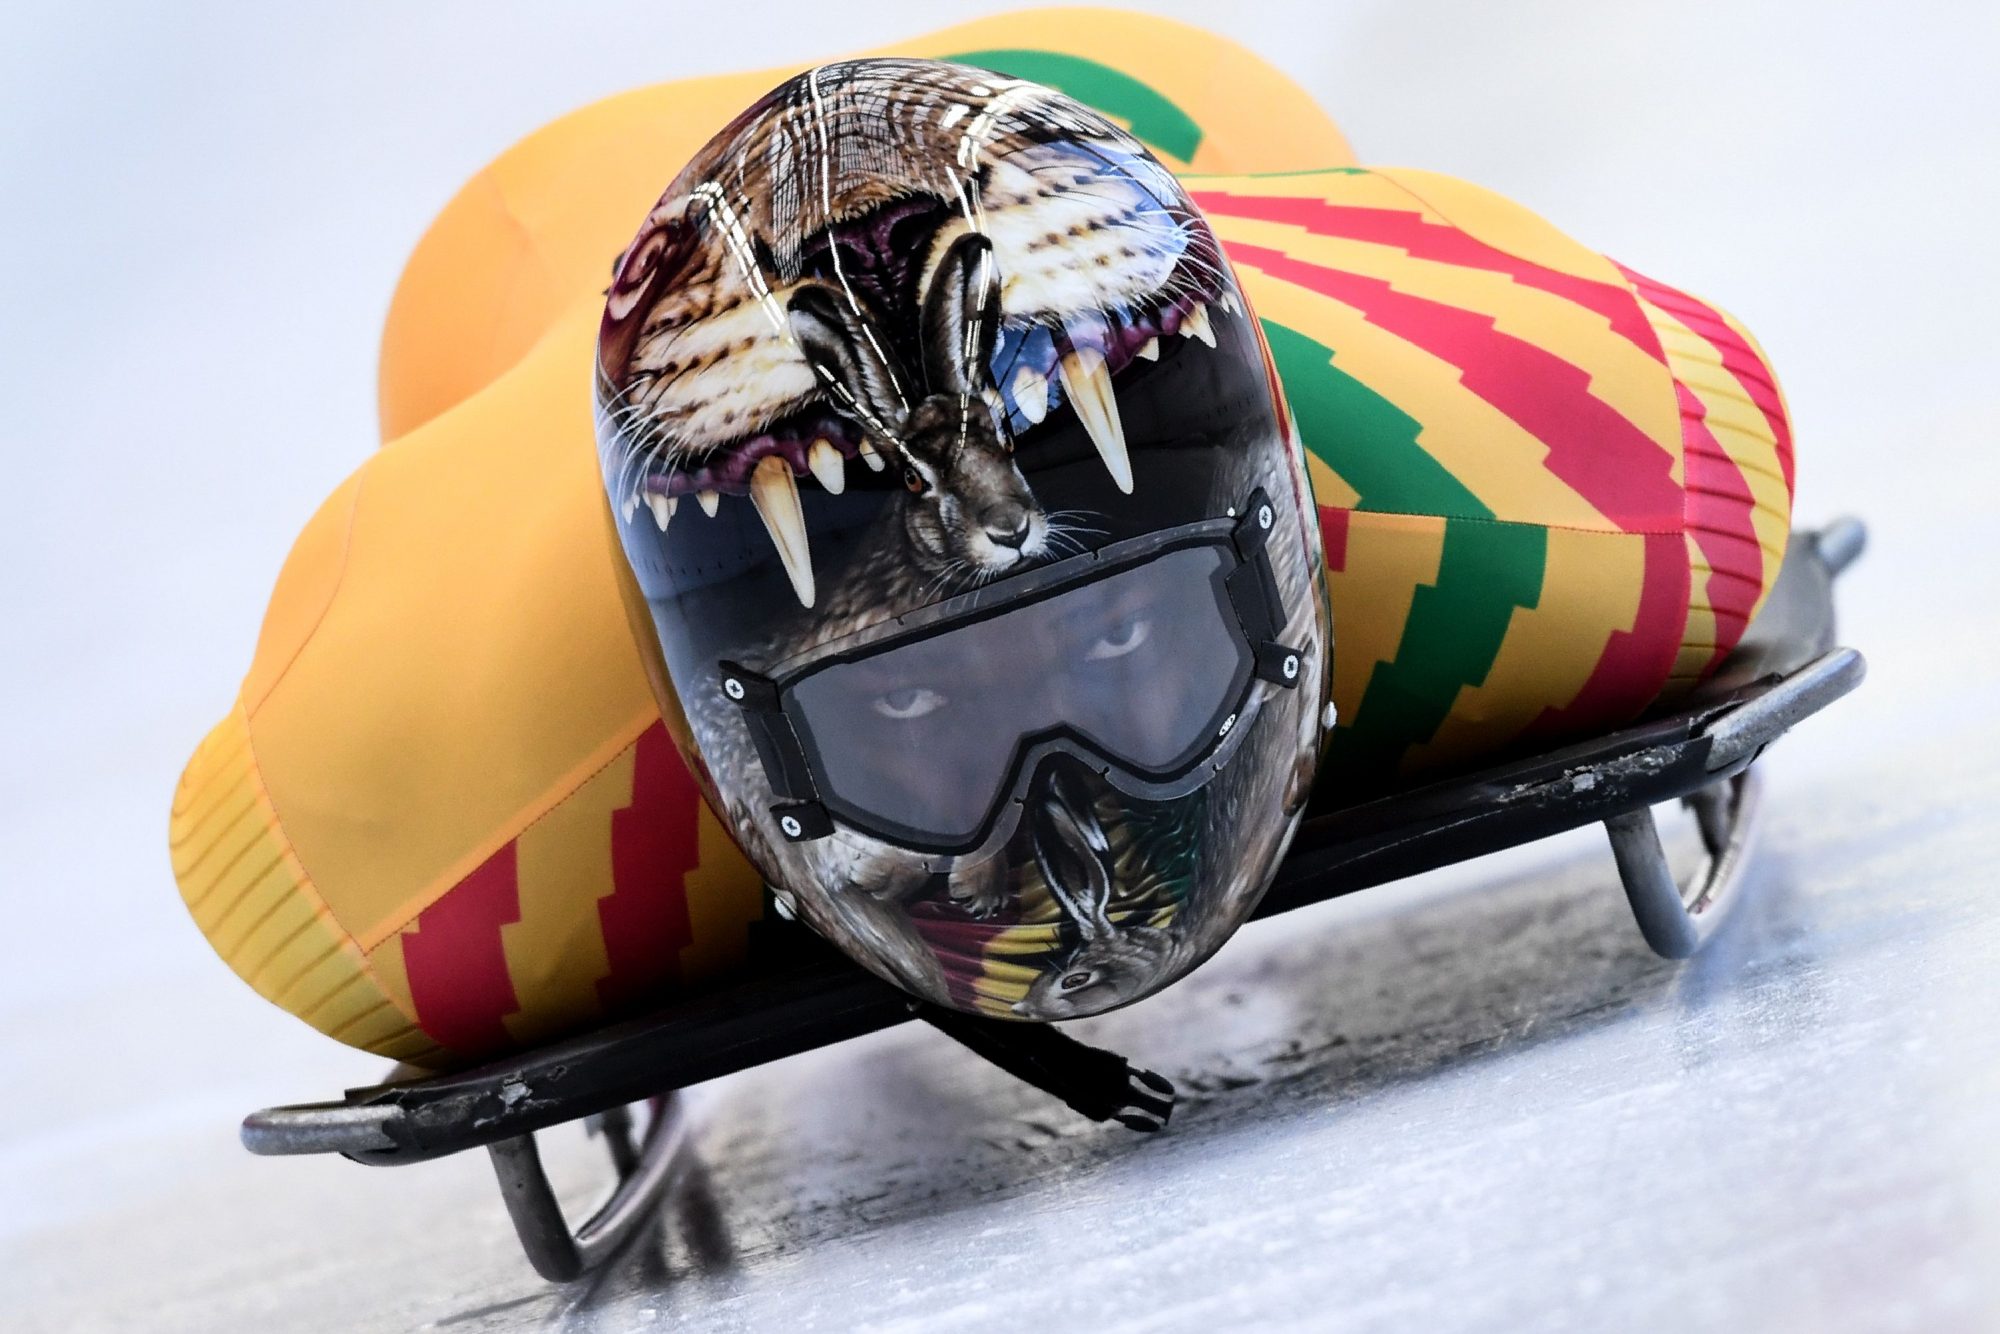 best-skeleton-helmets-winter-olympics-ghana.jpg